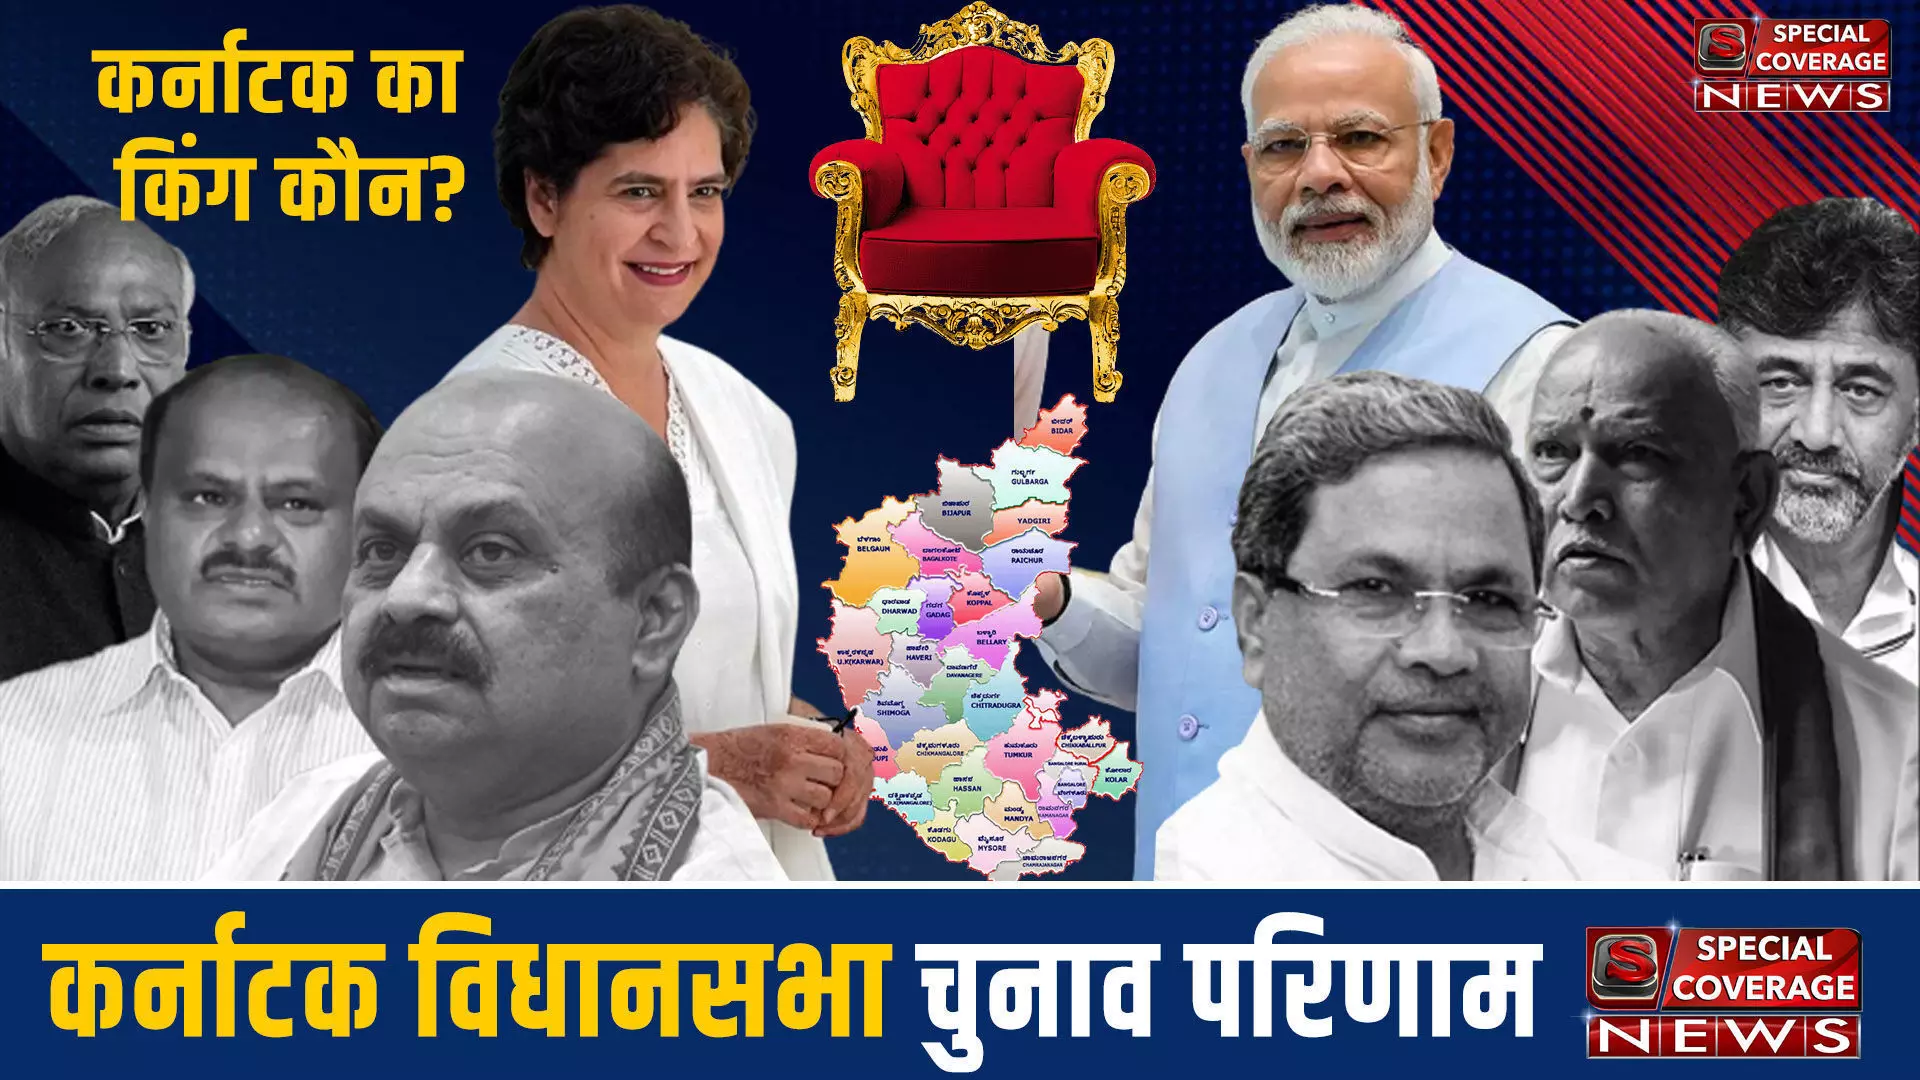 Karnataka Assembly Election 2023: कर्नाटक के रायचूर जिले की विधानसभा सीट के चुनाव परिणाम 2023